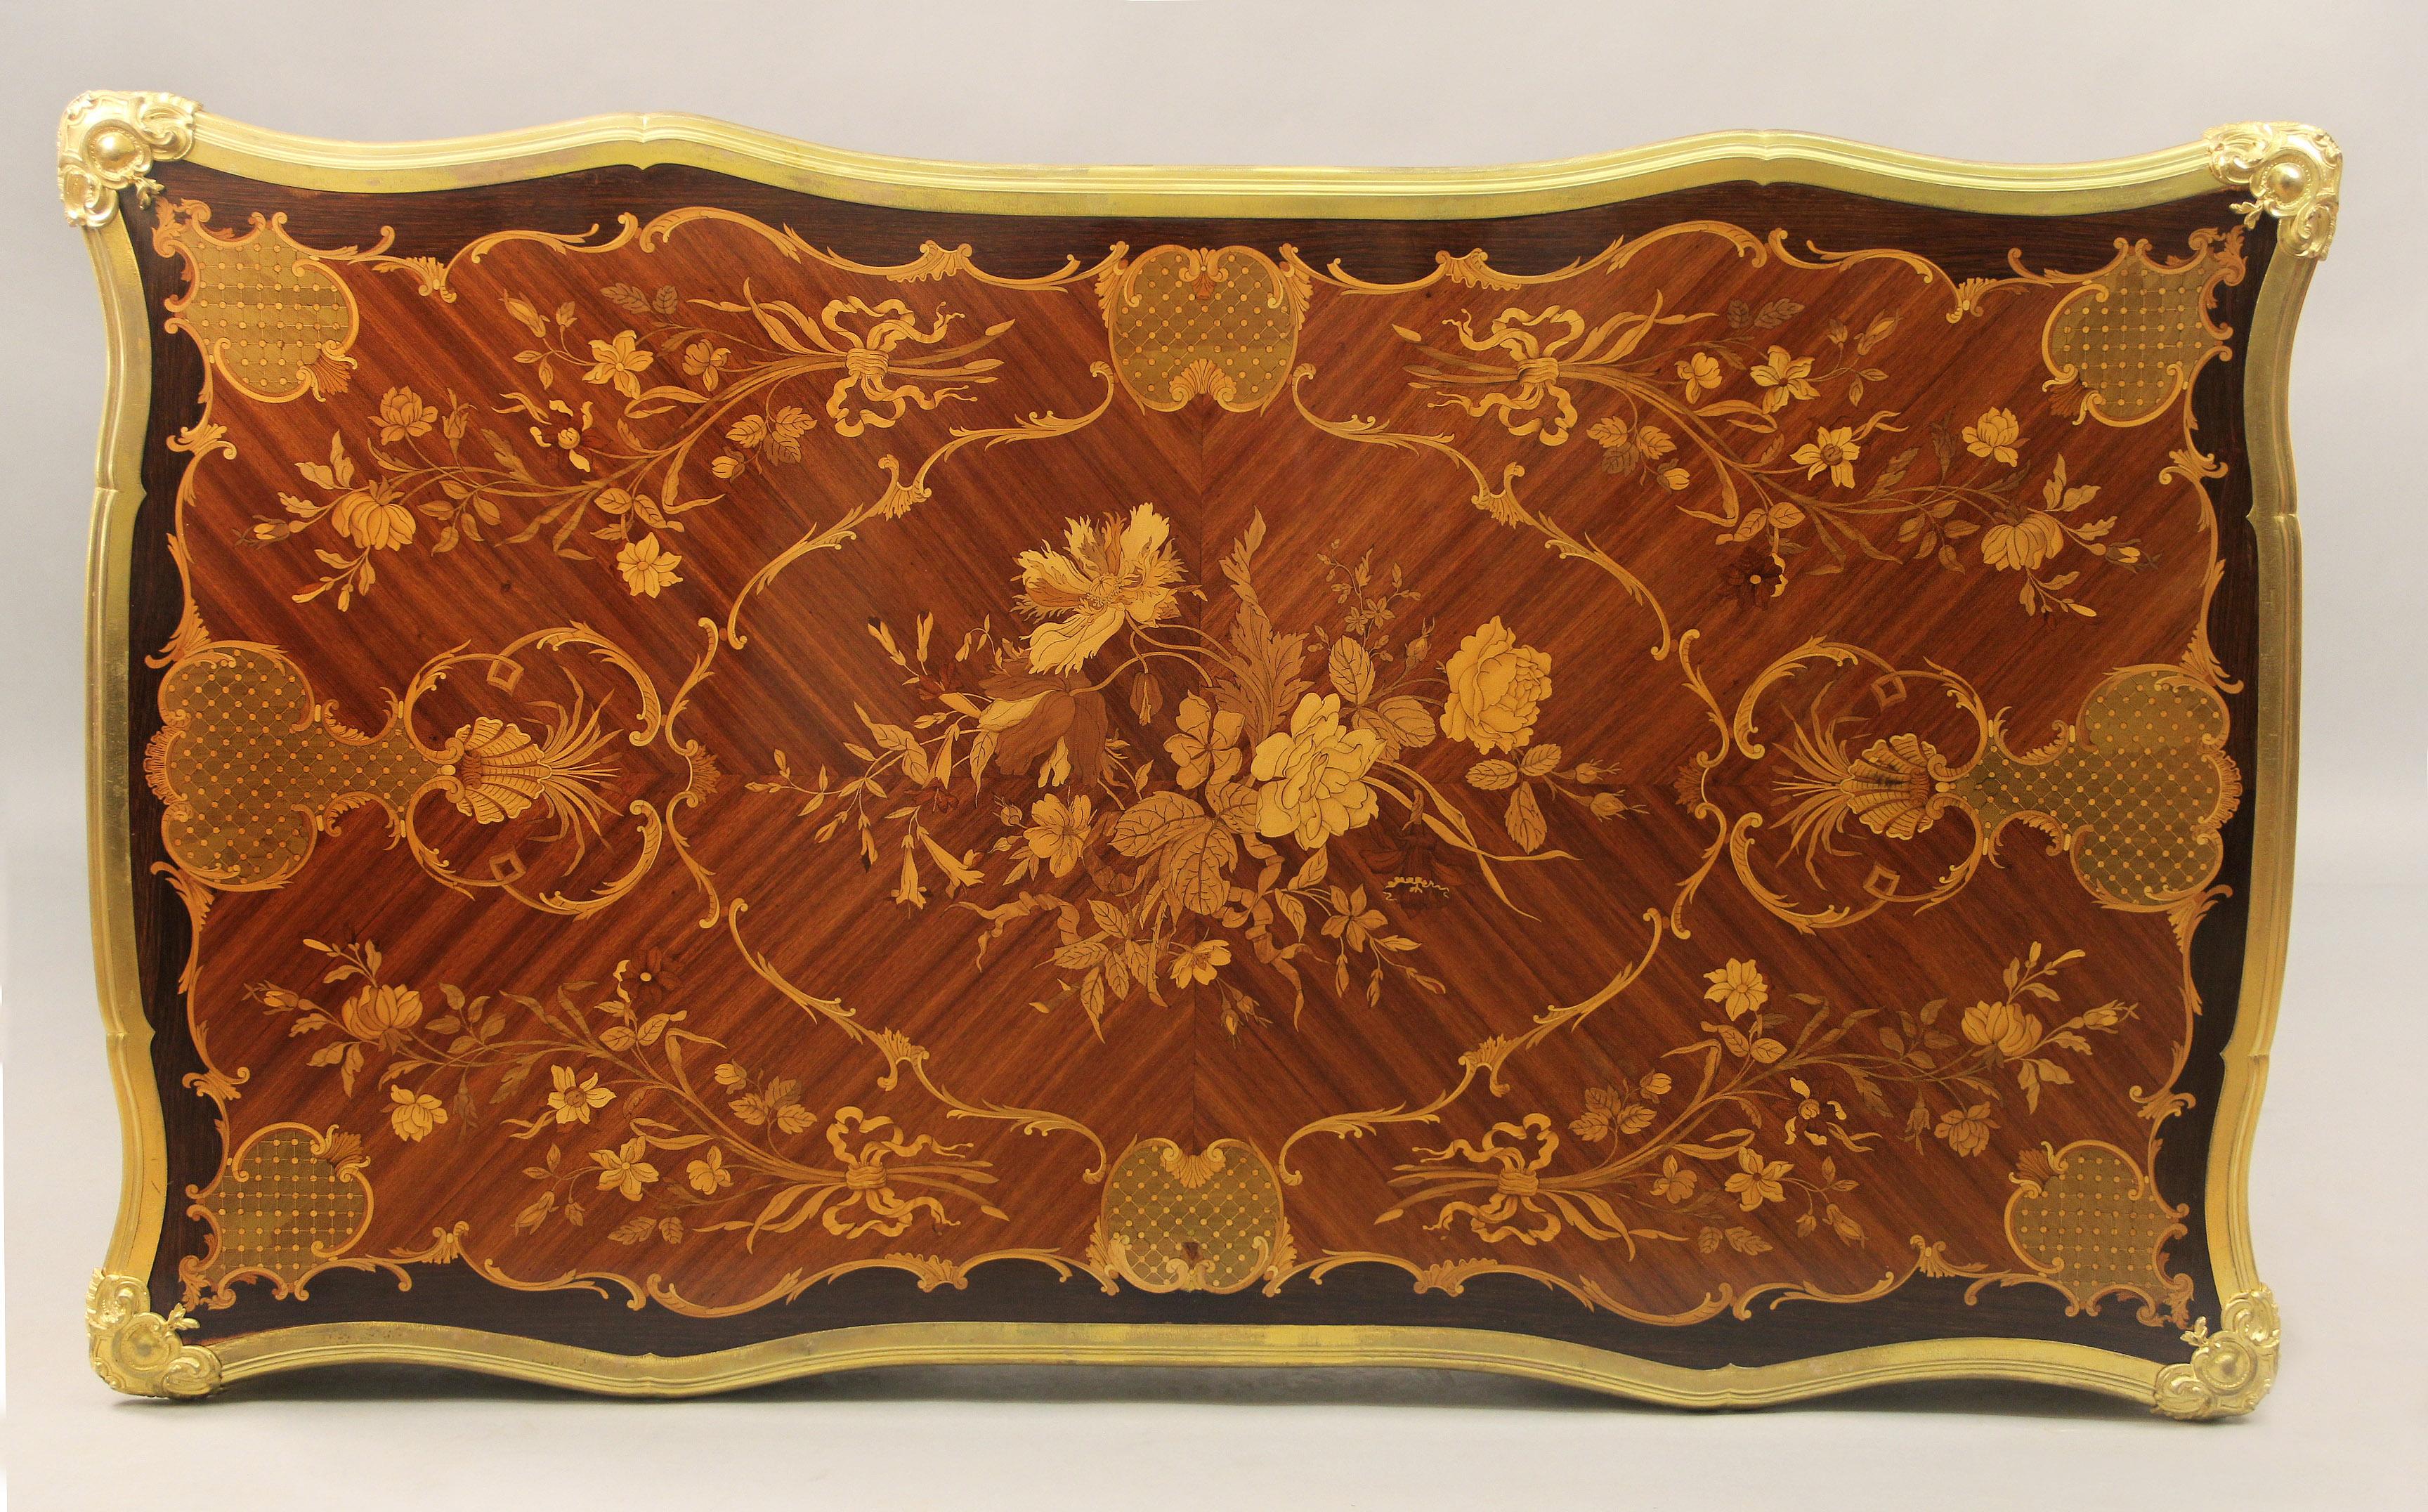 Ein fantastischer Tisch mit Intarsien aus vergoldeter Bronze im Louis XV-Stil aus dem späten 19.

Von Paul Sormani

Eine wunderbare Intarsienplatte mit floralen Einlegearbeiten und einer bronzenen Bordüre über drei eingelegten Schubladen. Die